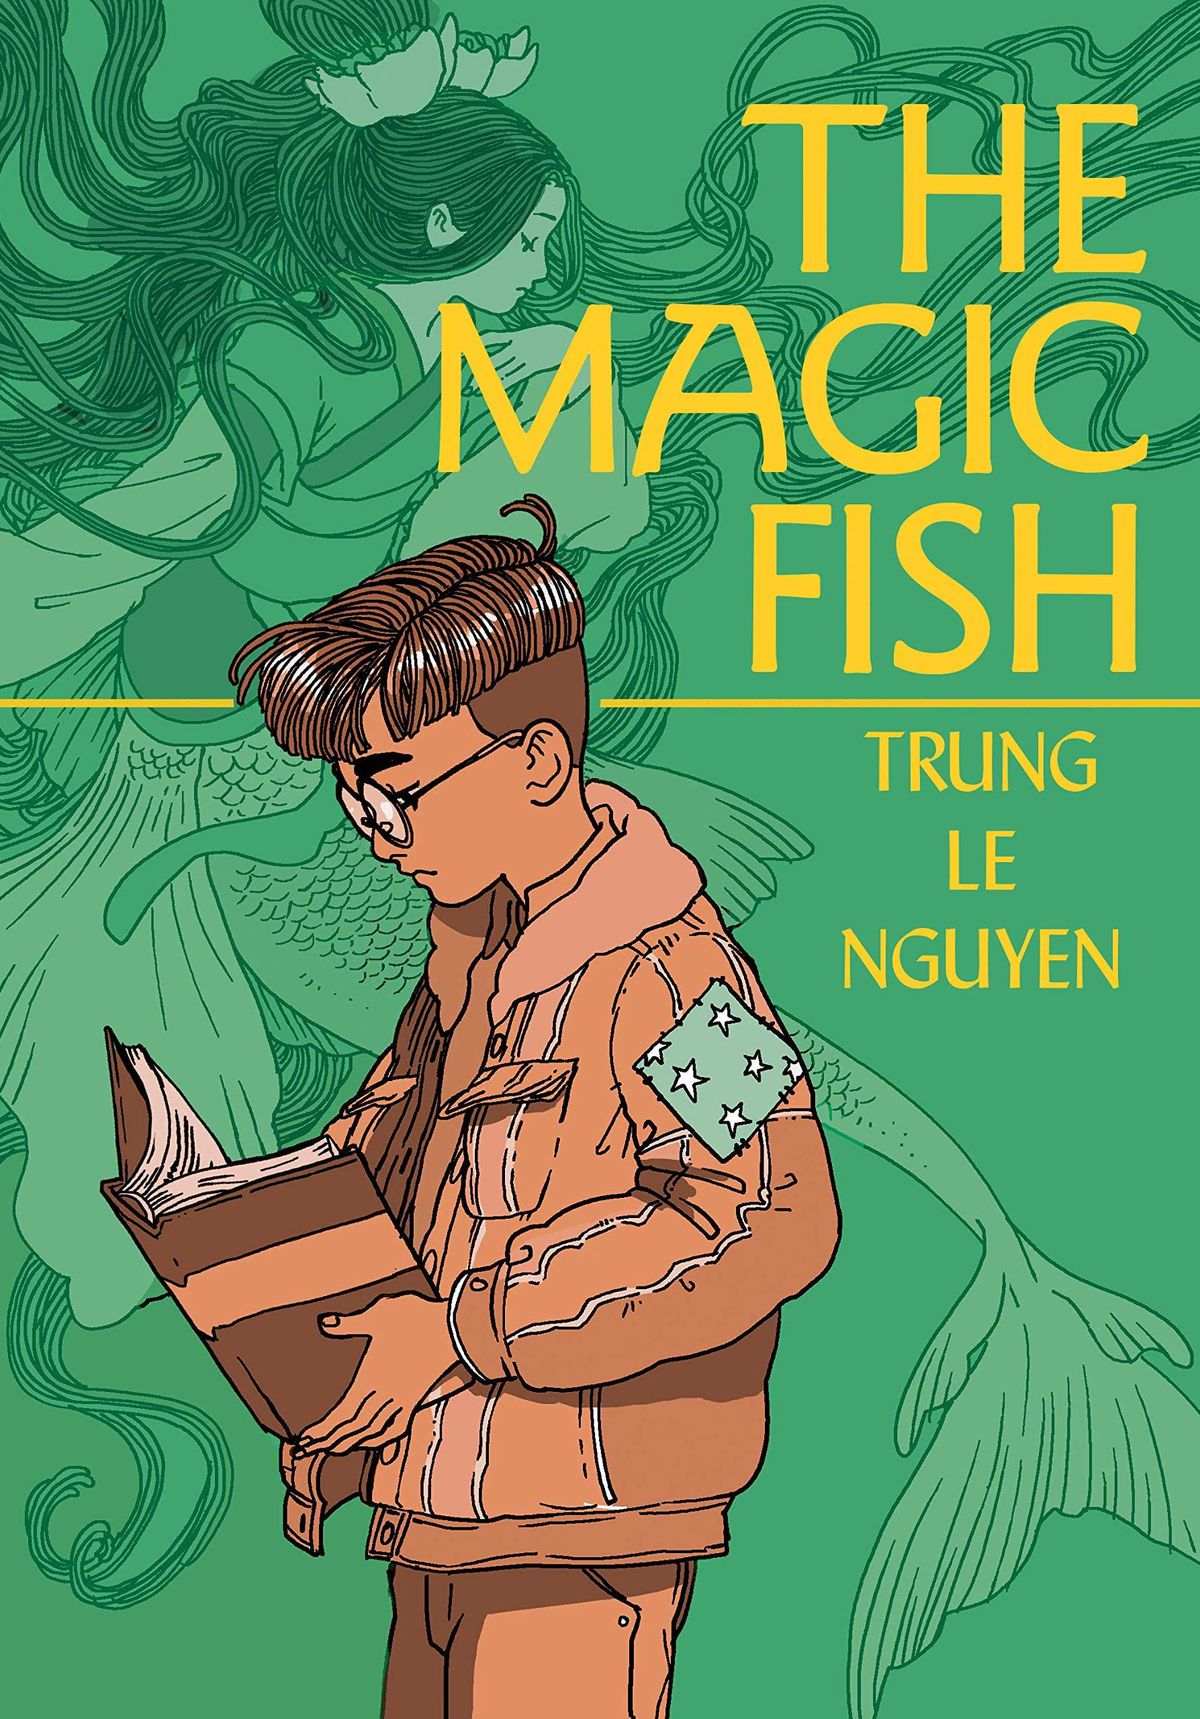 La copertina di The Magic Fish, con un ragazzo dai capelli corti con gli occhiali e una giacca voluminosa che legge un libro e accigliato in primo piano, mentre una sirena con i capelli lunghi e fluenti e le vesti fluttua sullo sfondo